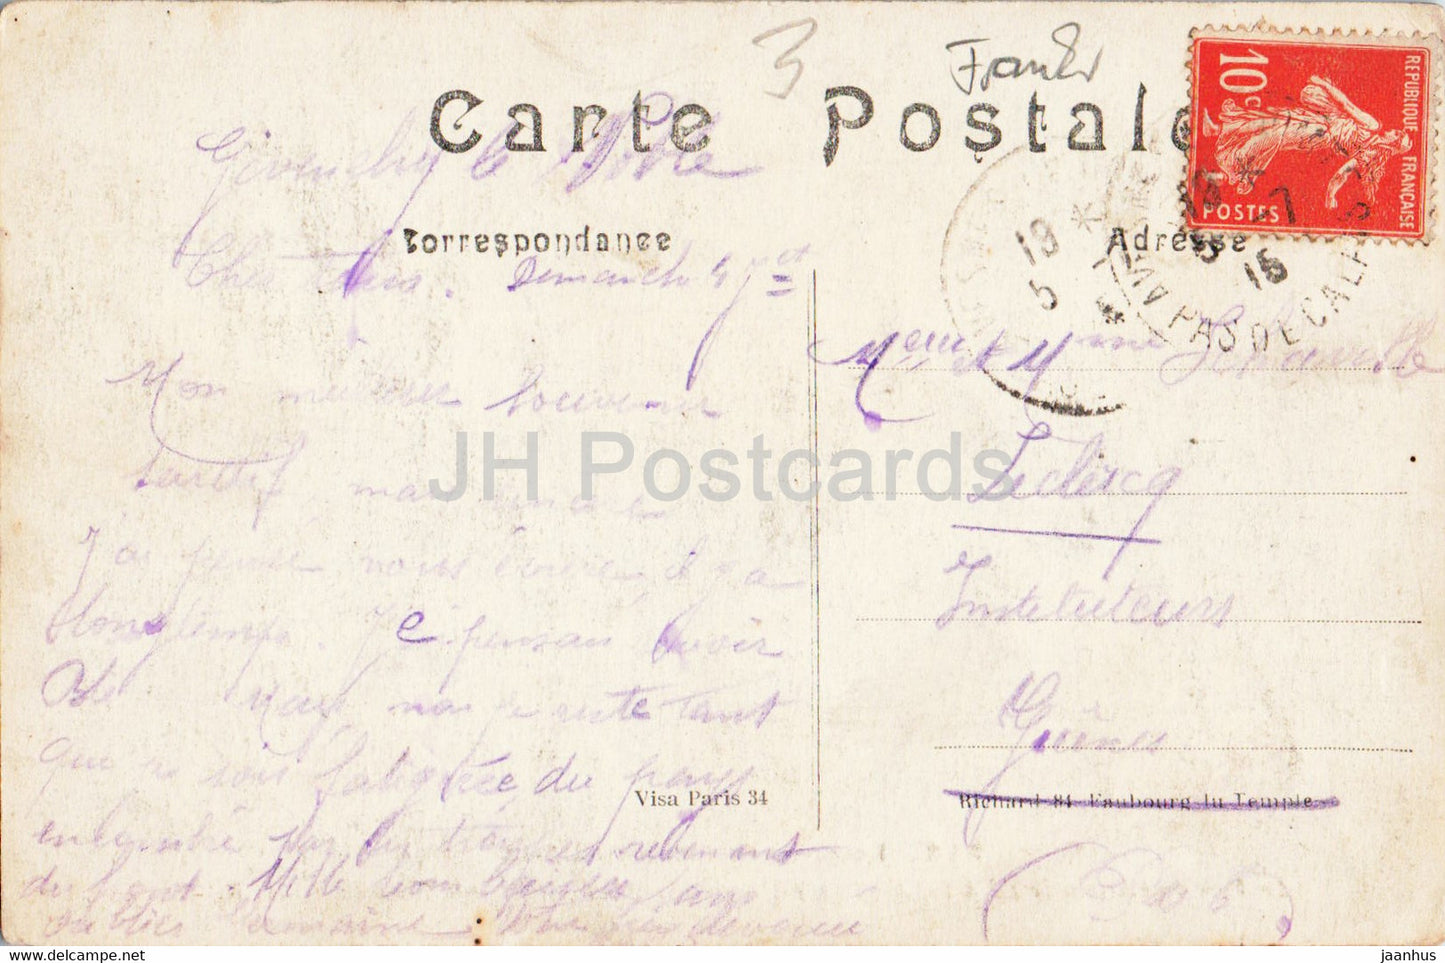 Le Pont du Chemin de fer a Picquigny detruit par le genie Francais - WWI - 342 - old postcard - 1916 - France - used